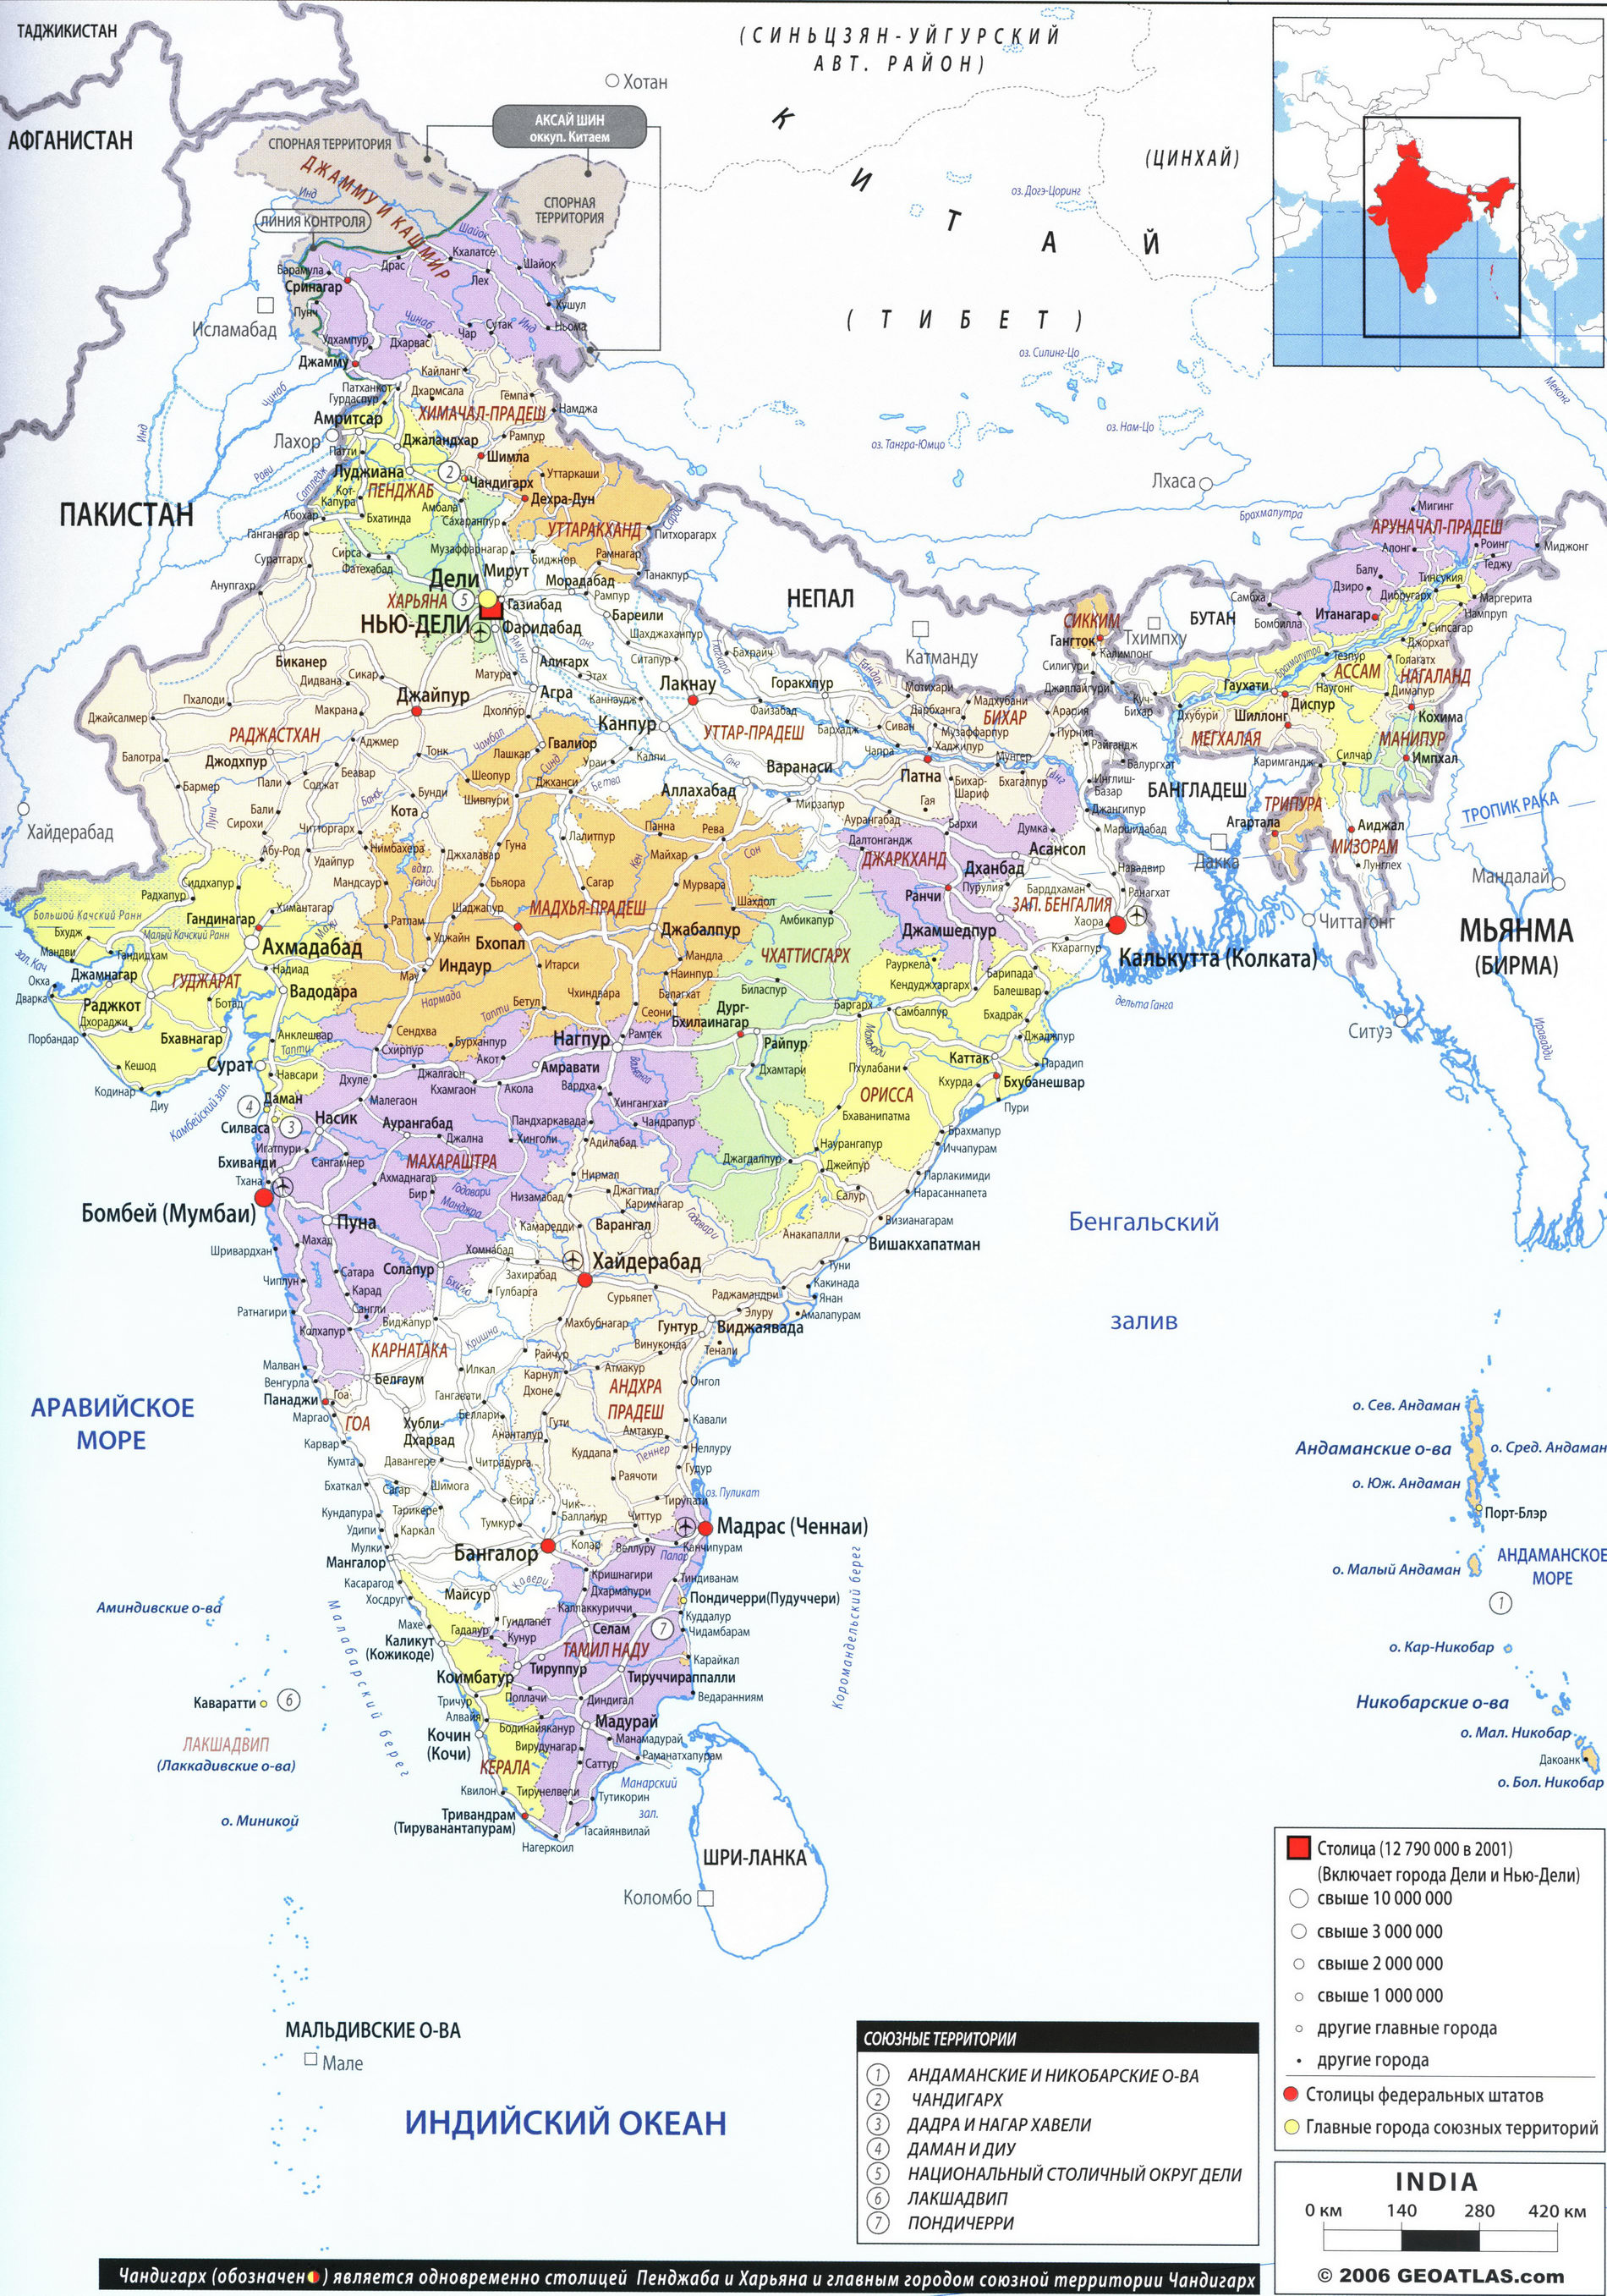 Индия карта на русском языке, география описание страны - Атлас мира